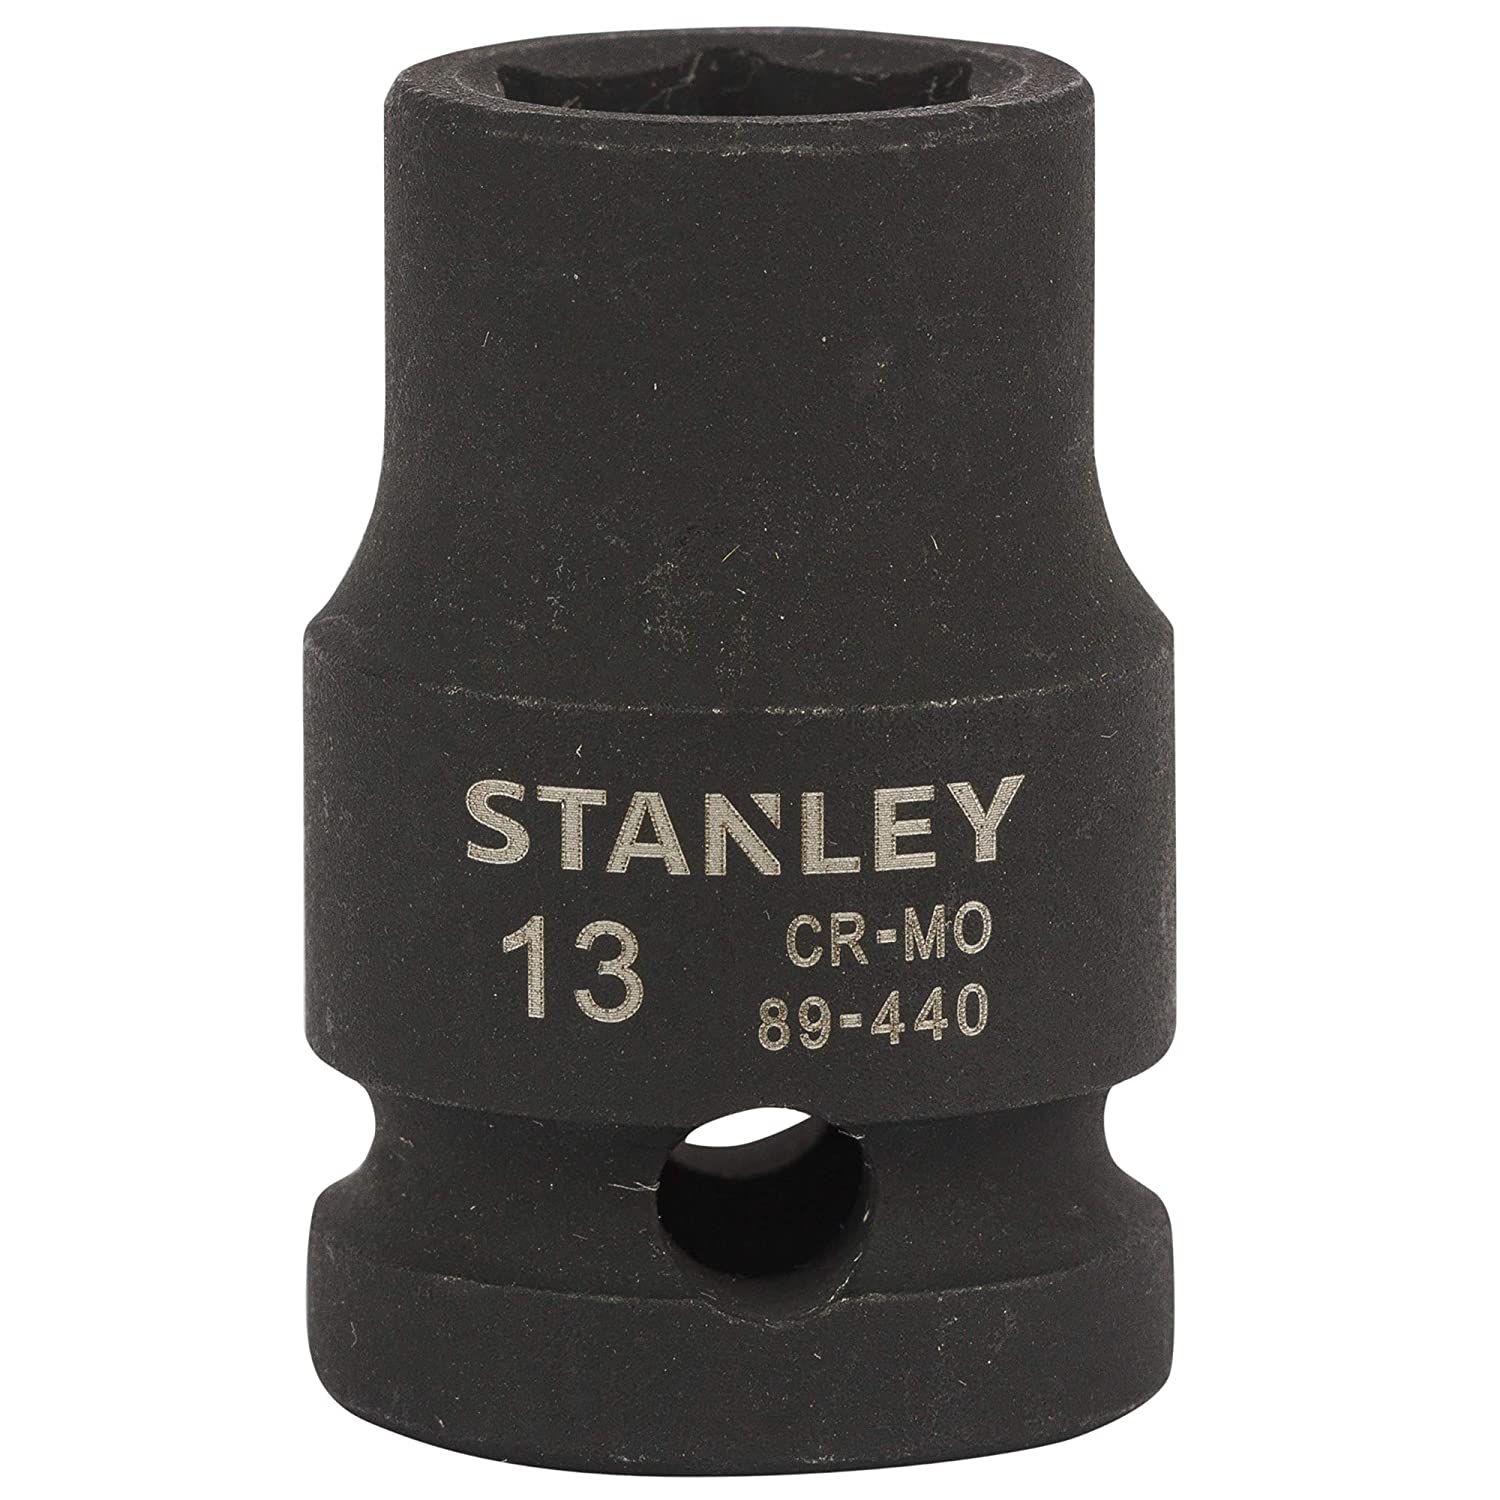 Hình ảnh 1 của mặt hàng Đầu tuýp 1/2" 13mm Stanley STMT89440-8B